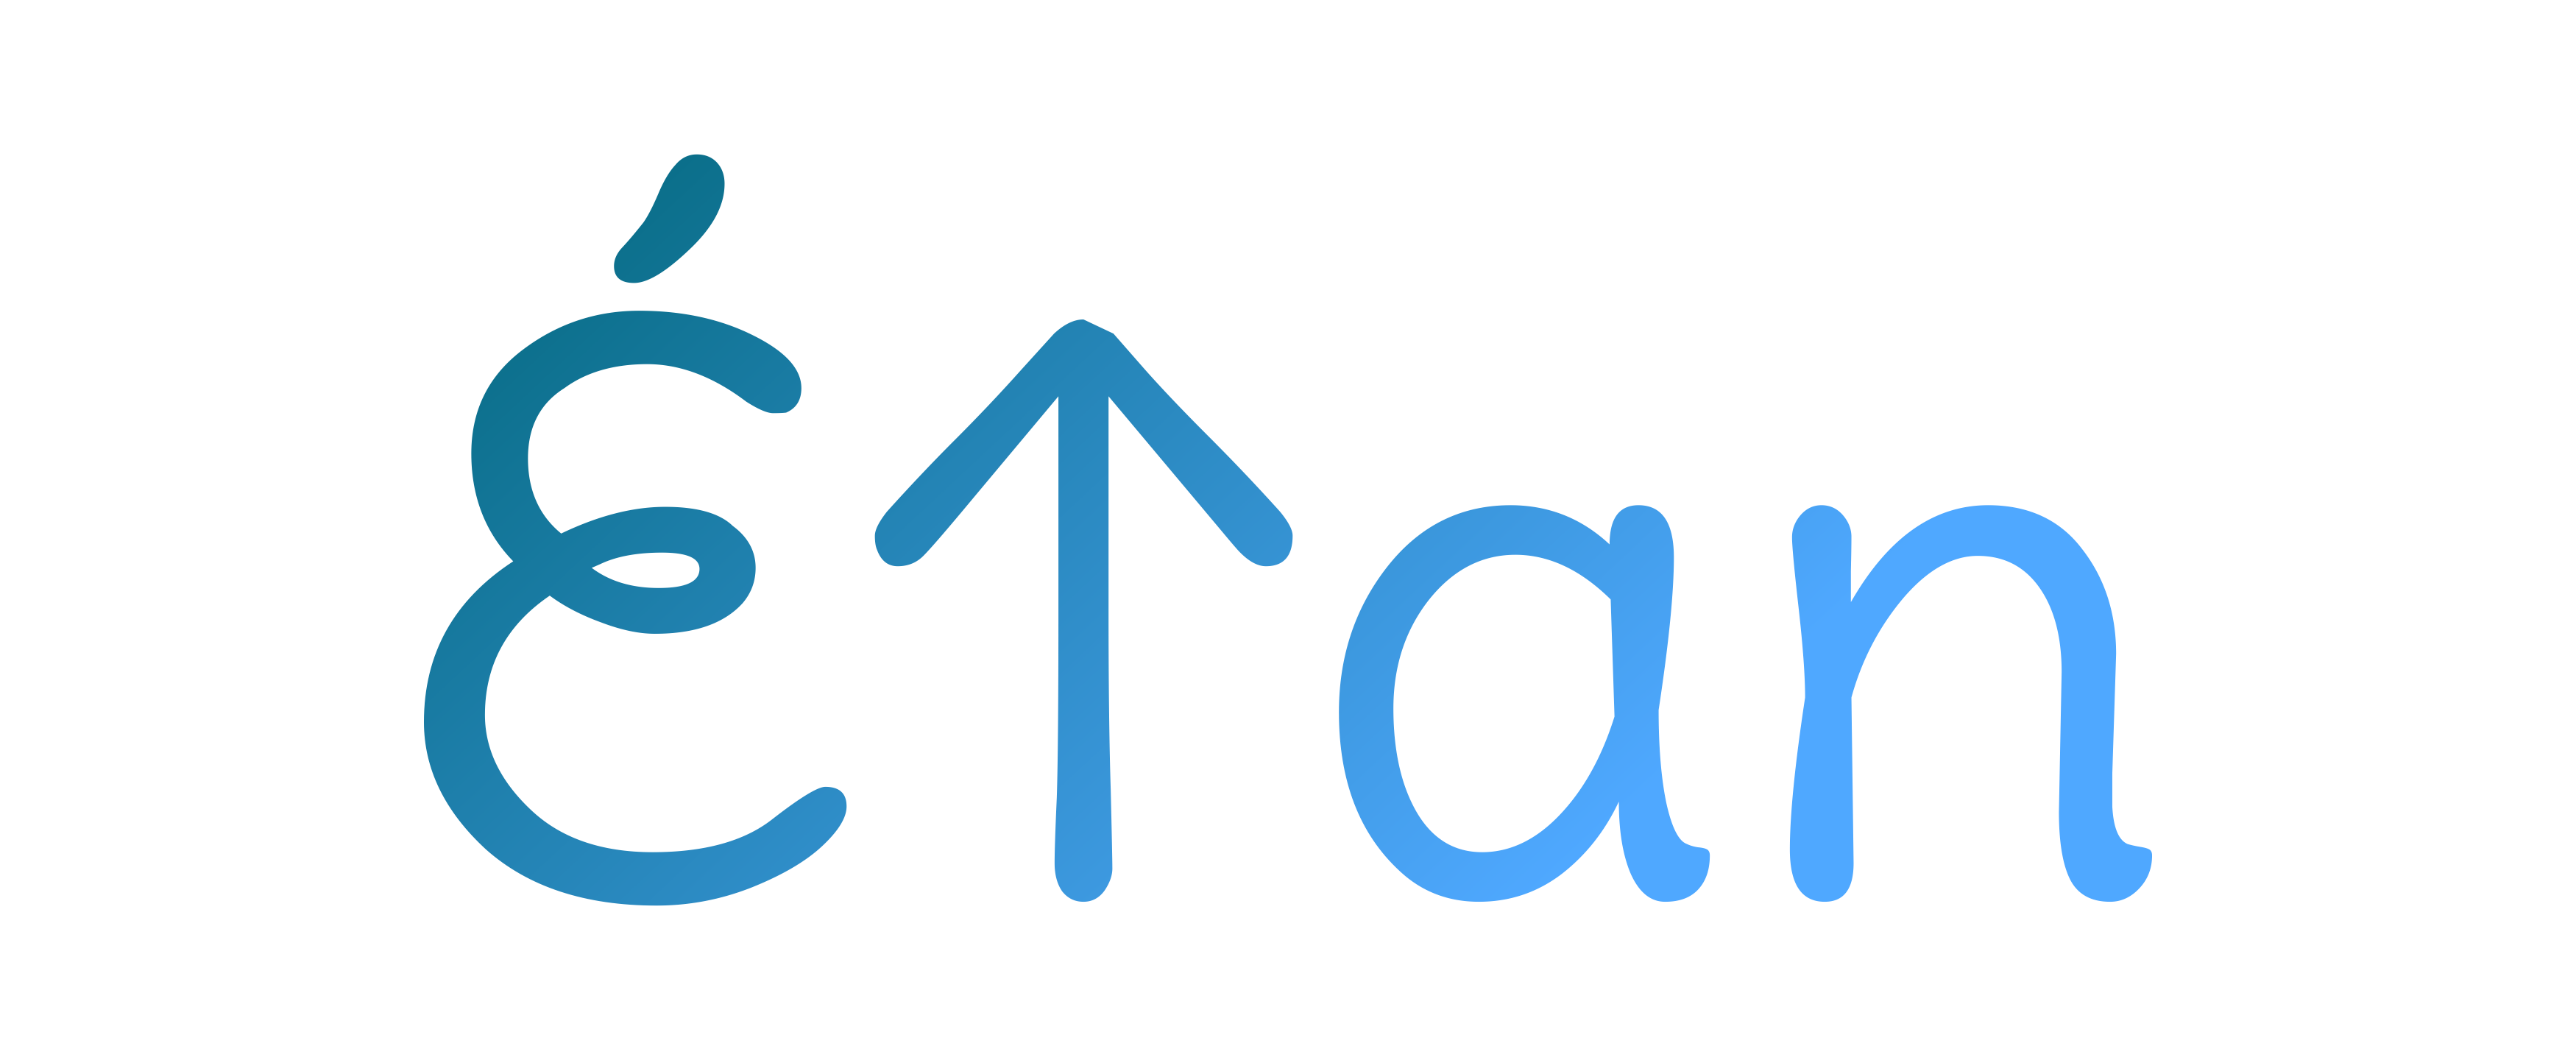 Élan Logo. Logo designed by https://www.launchaco.com/